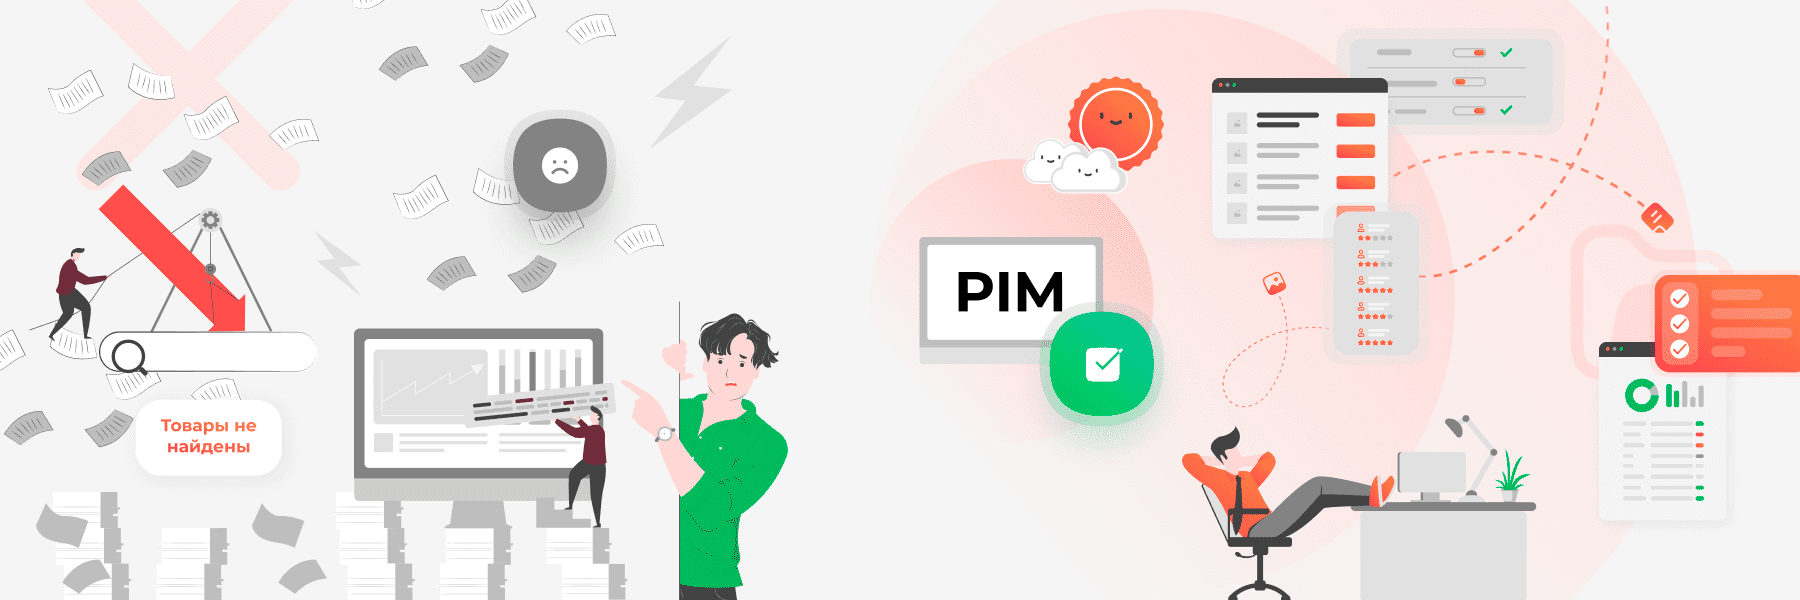 PIM система управления контентом